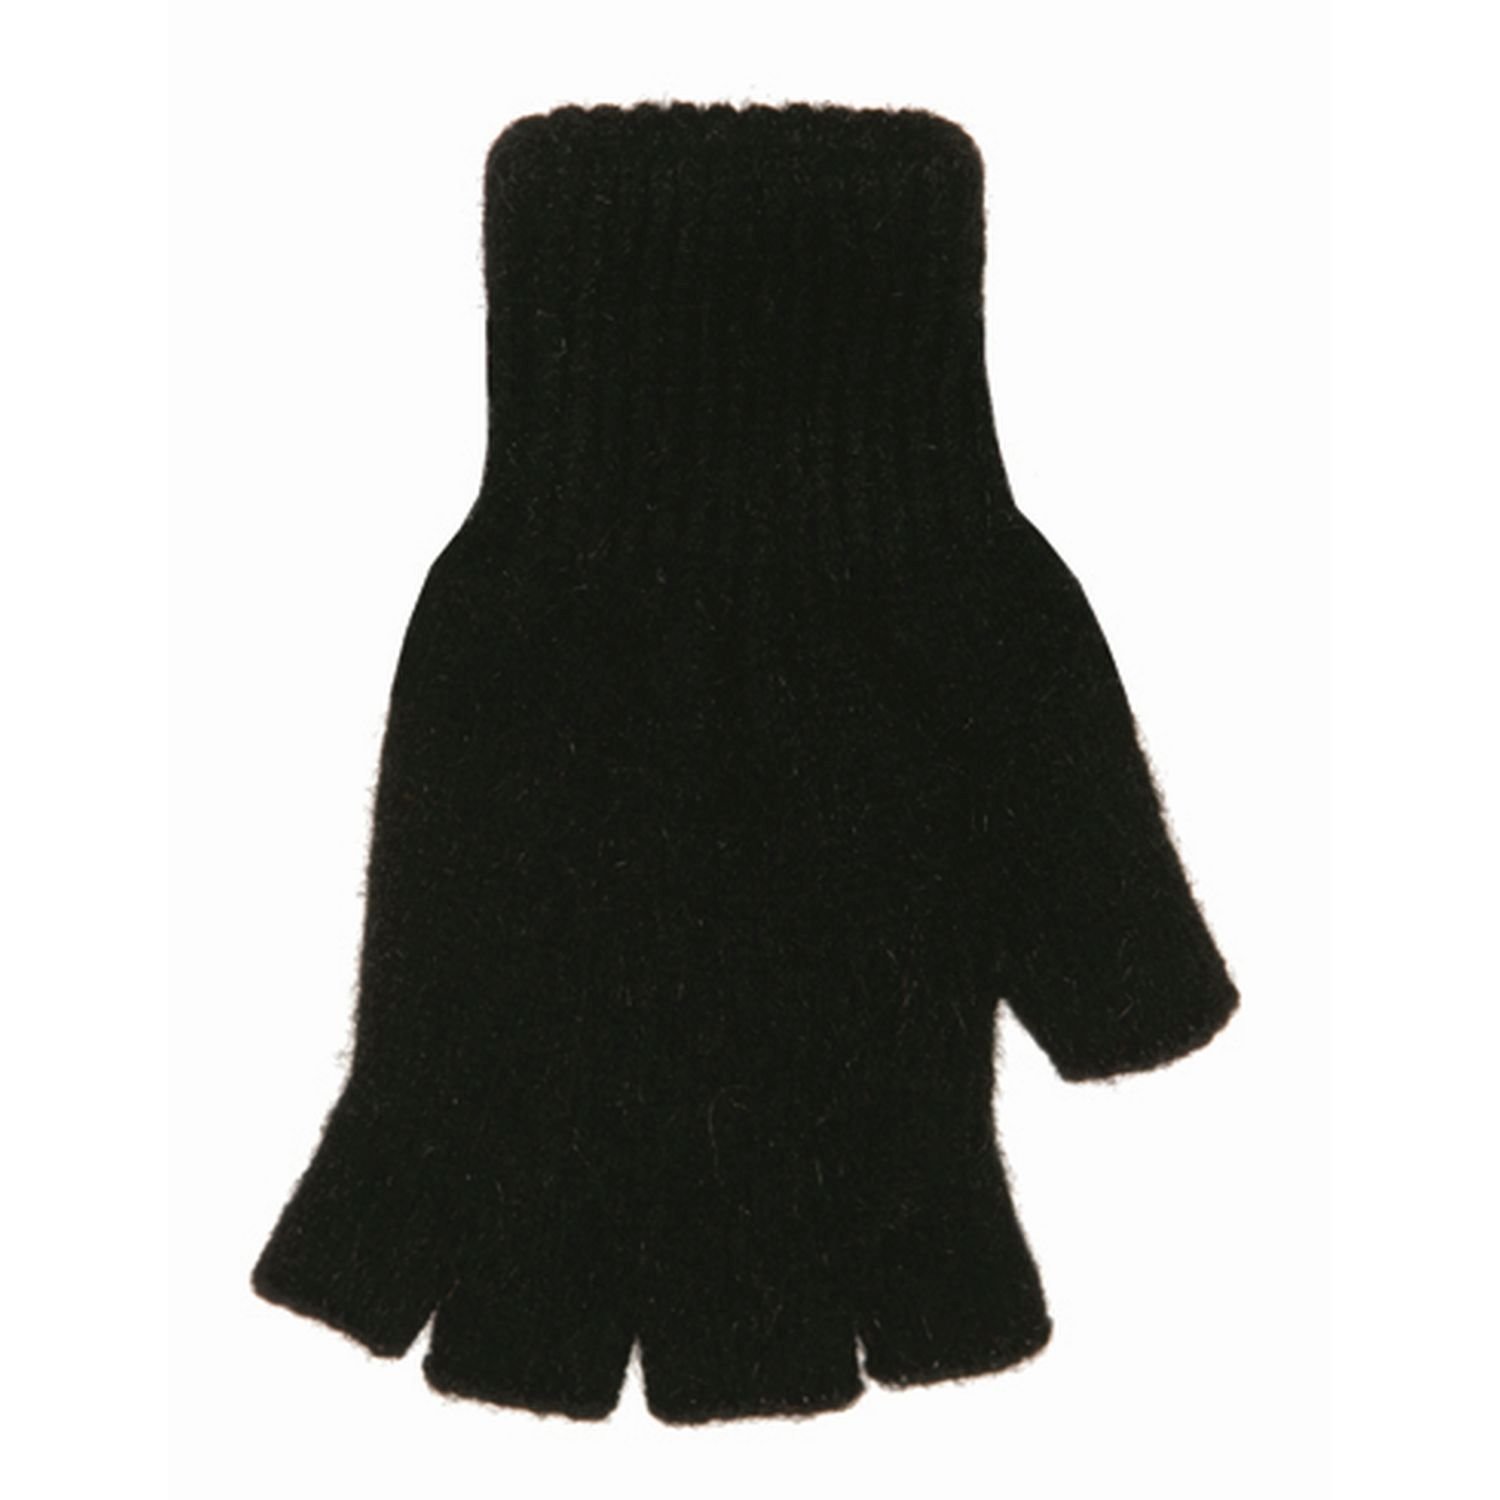 MKM Possum/Merino Gloves Fingerless